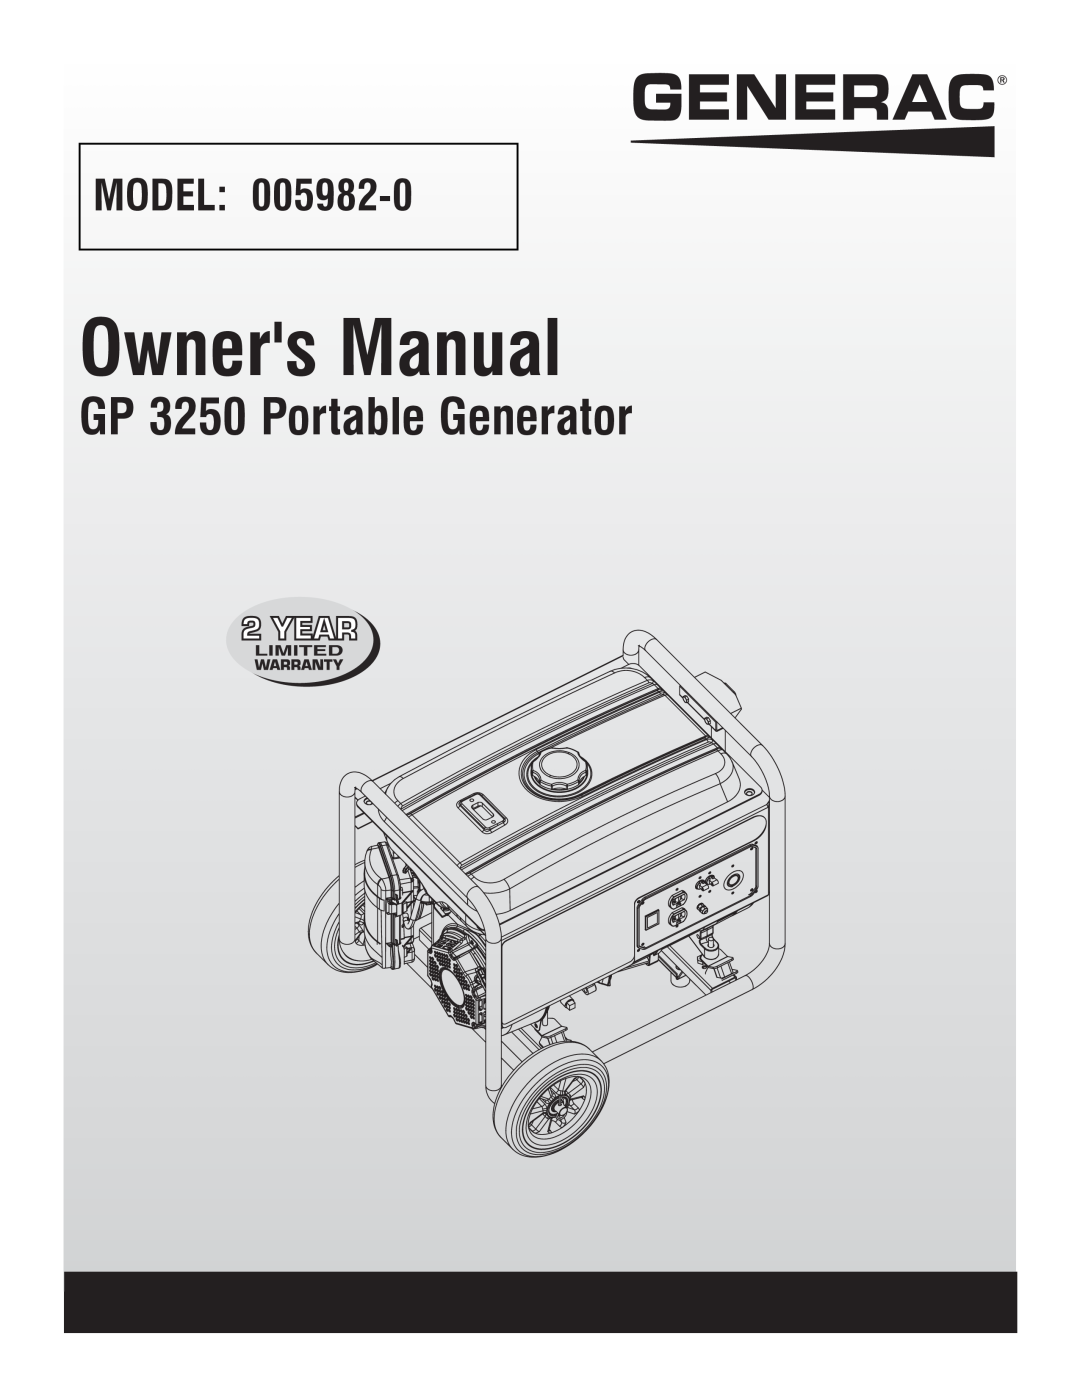 Generac 5982R, 005982-0 owner manual GP 3250 Portable Generator, Model 